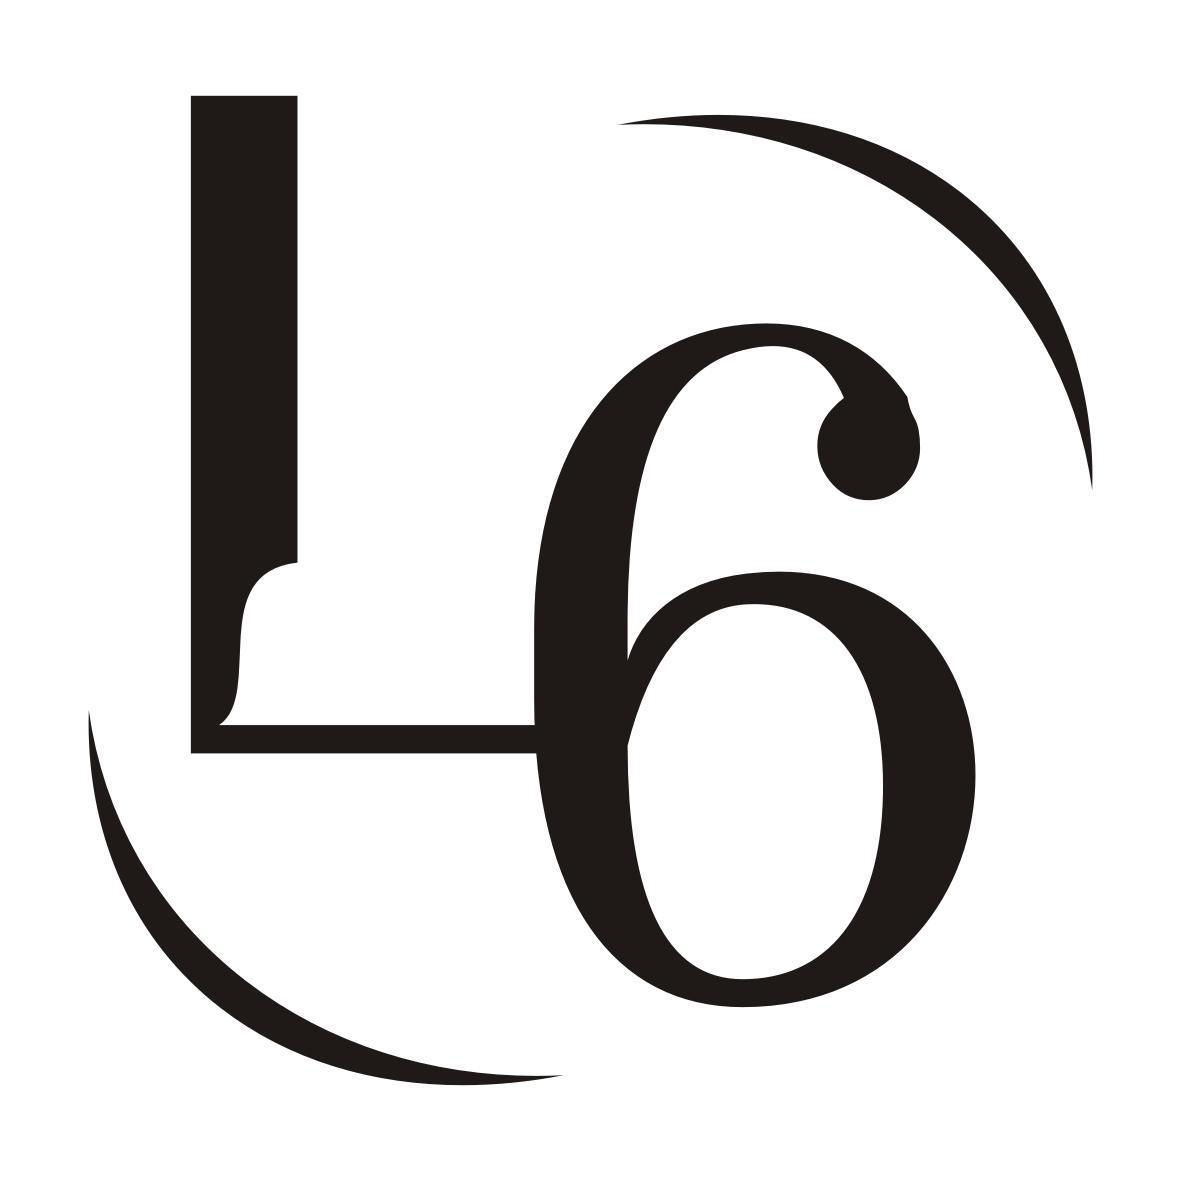 L6